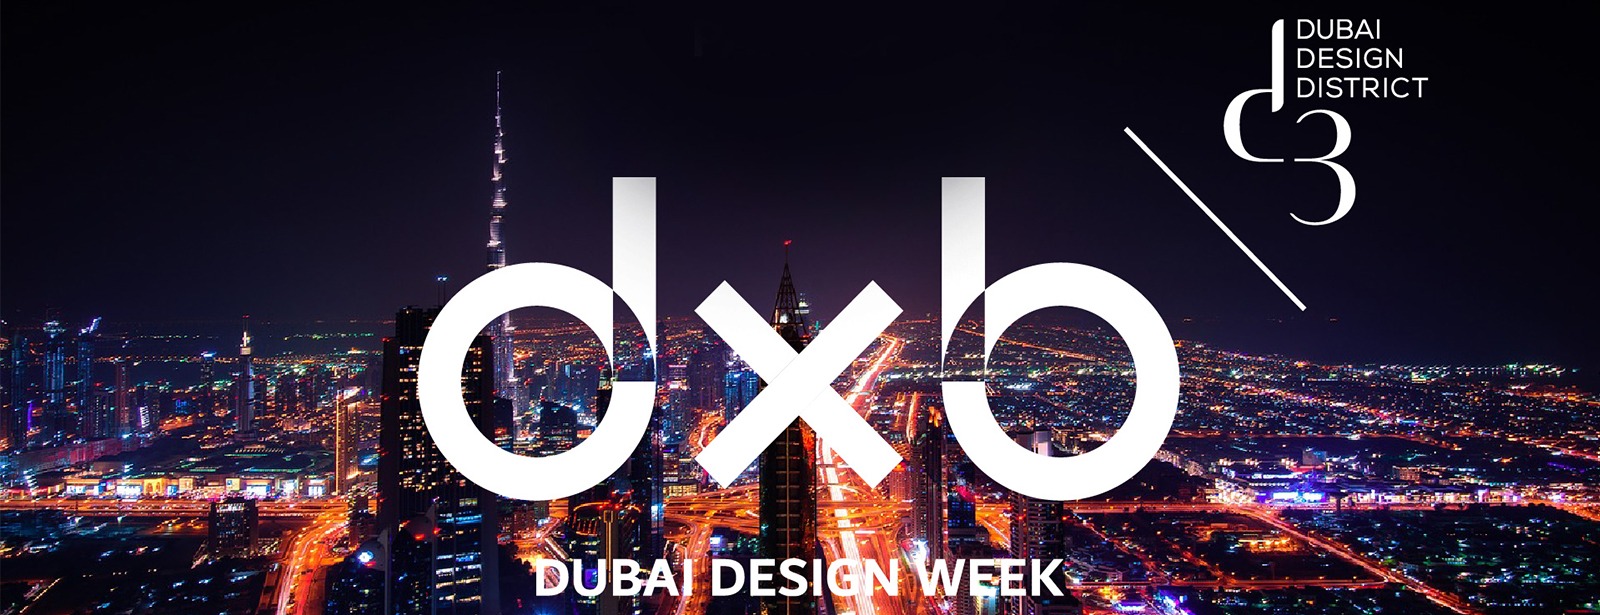 Dubai Design Week 2020 - Coming Soon in UAE